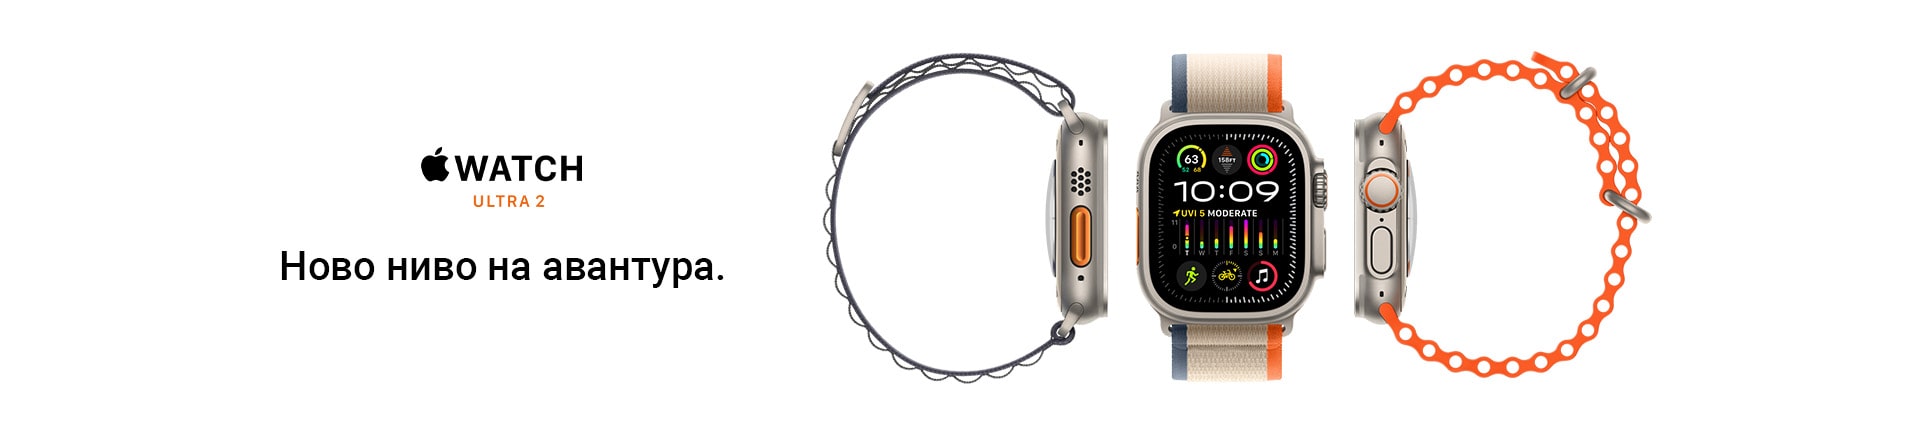 MK~Apple Watch Ultra 2 MOBILE 380 X 436 LANDING-min.jpg